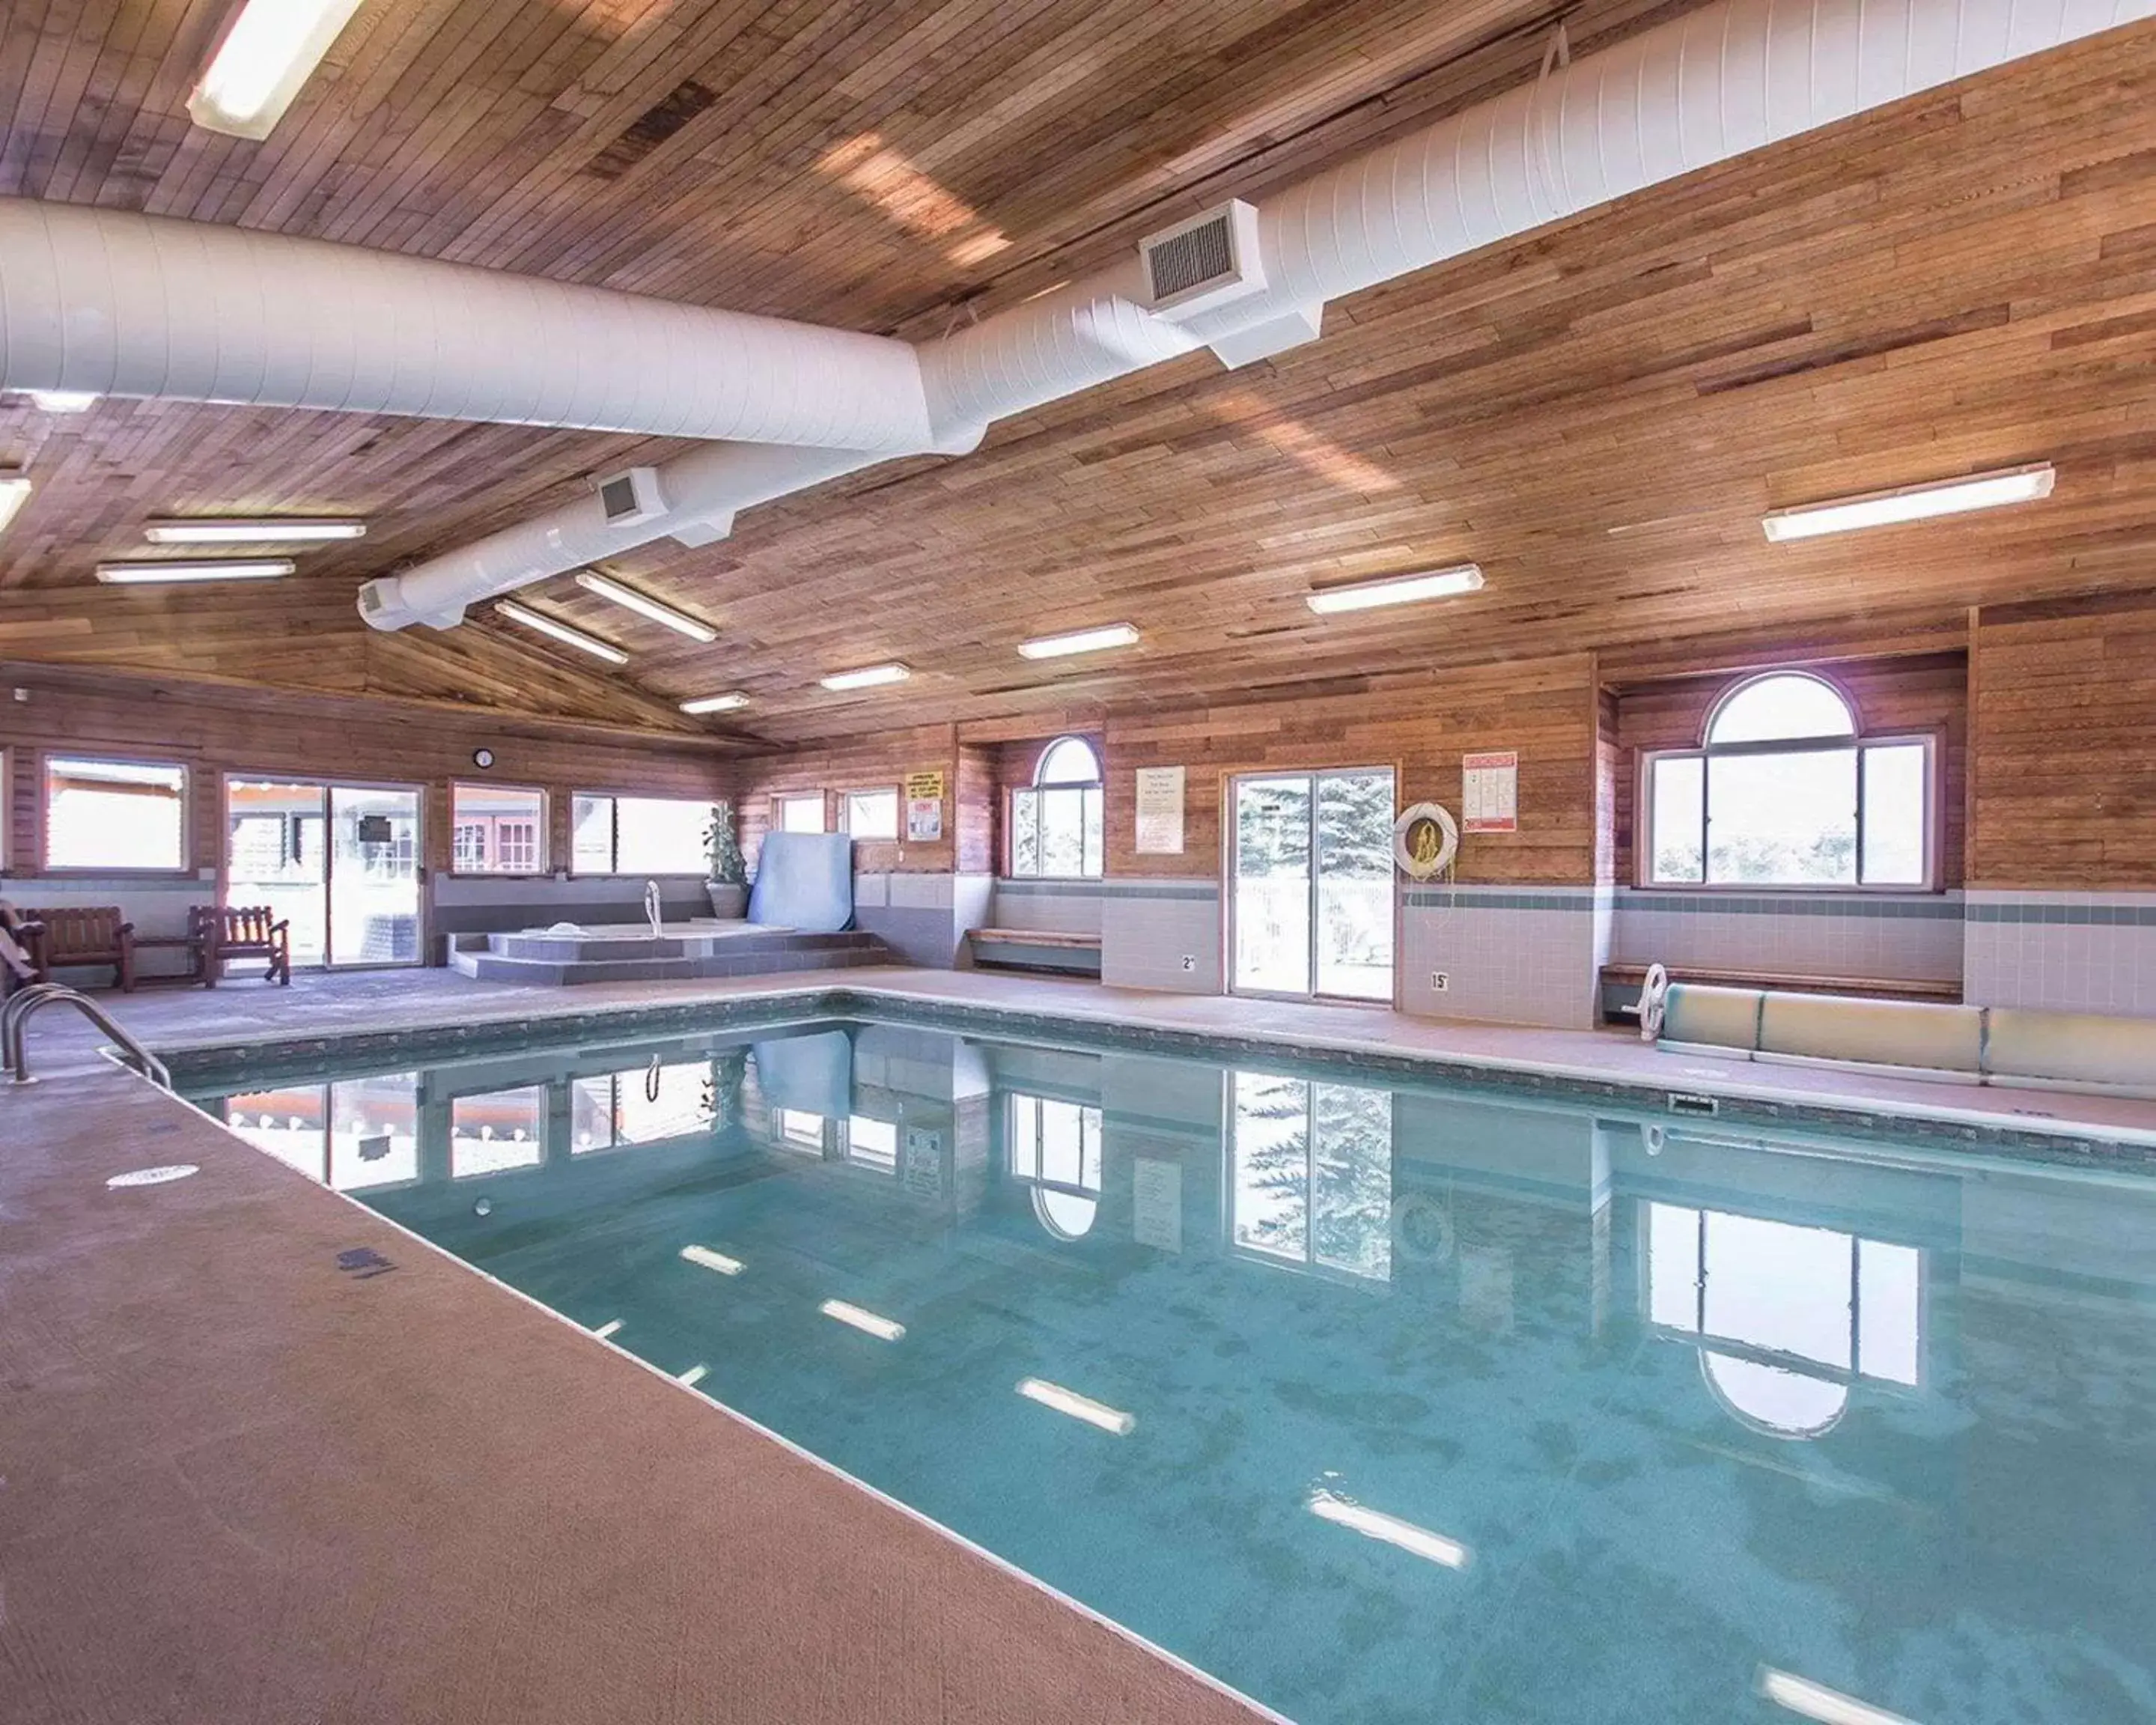 On site, Swimming Pool in Quality Inn Merritt